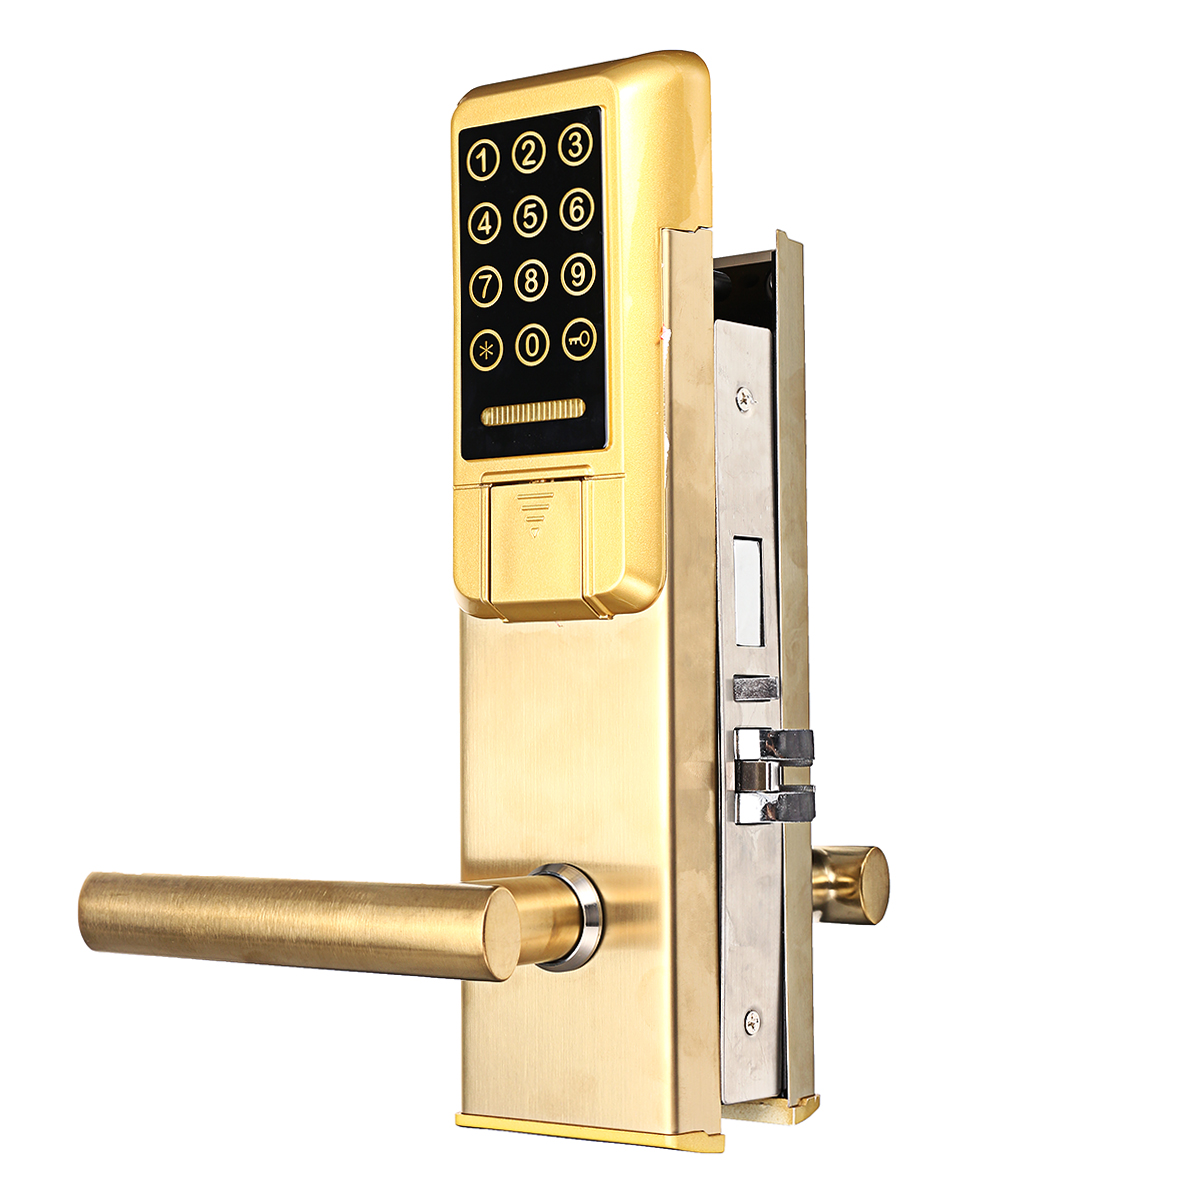 

Golden Smart Electronic Entry Door Замок Пароль Индуктивный Замок Клавиатура с сенсорным экраном с картой RFID